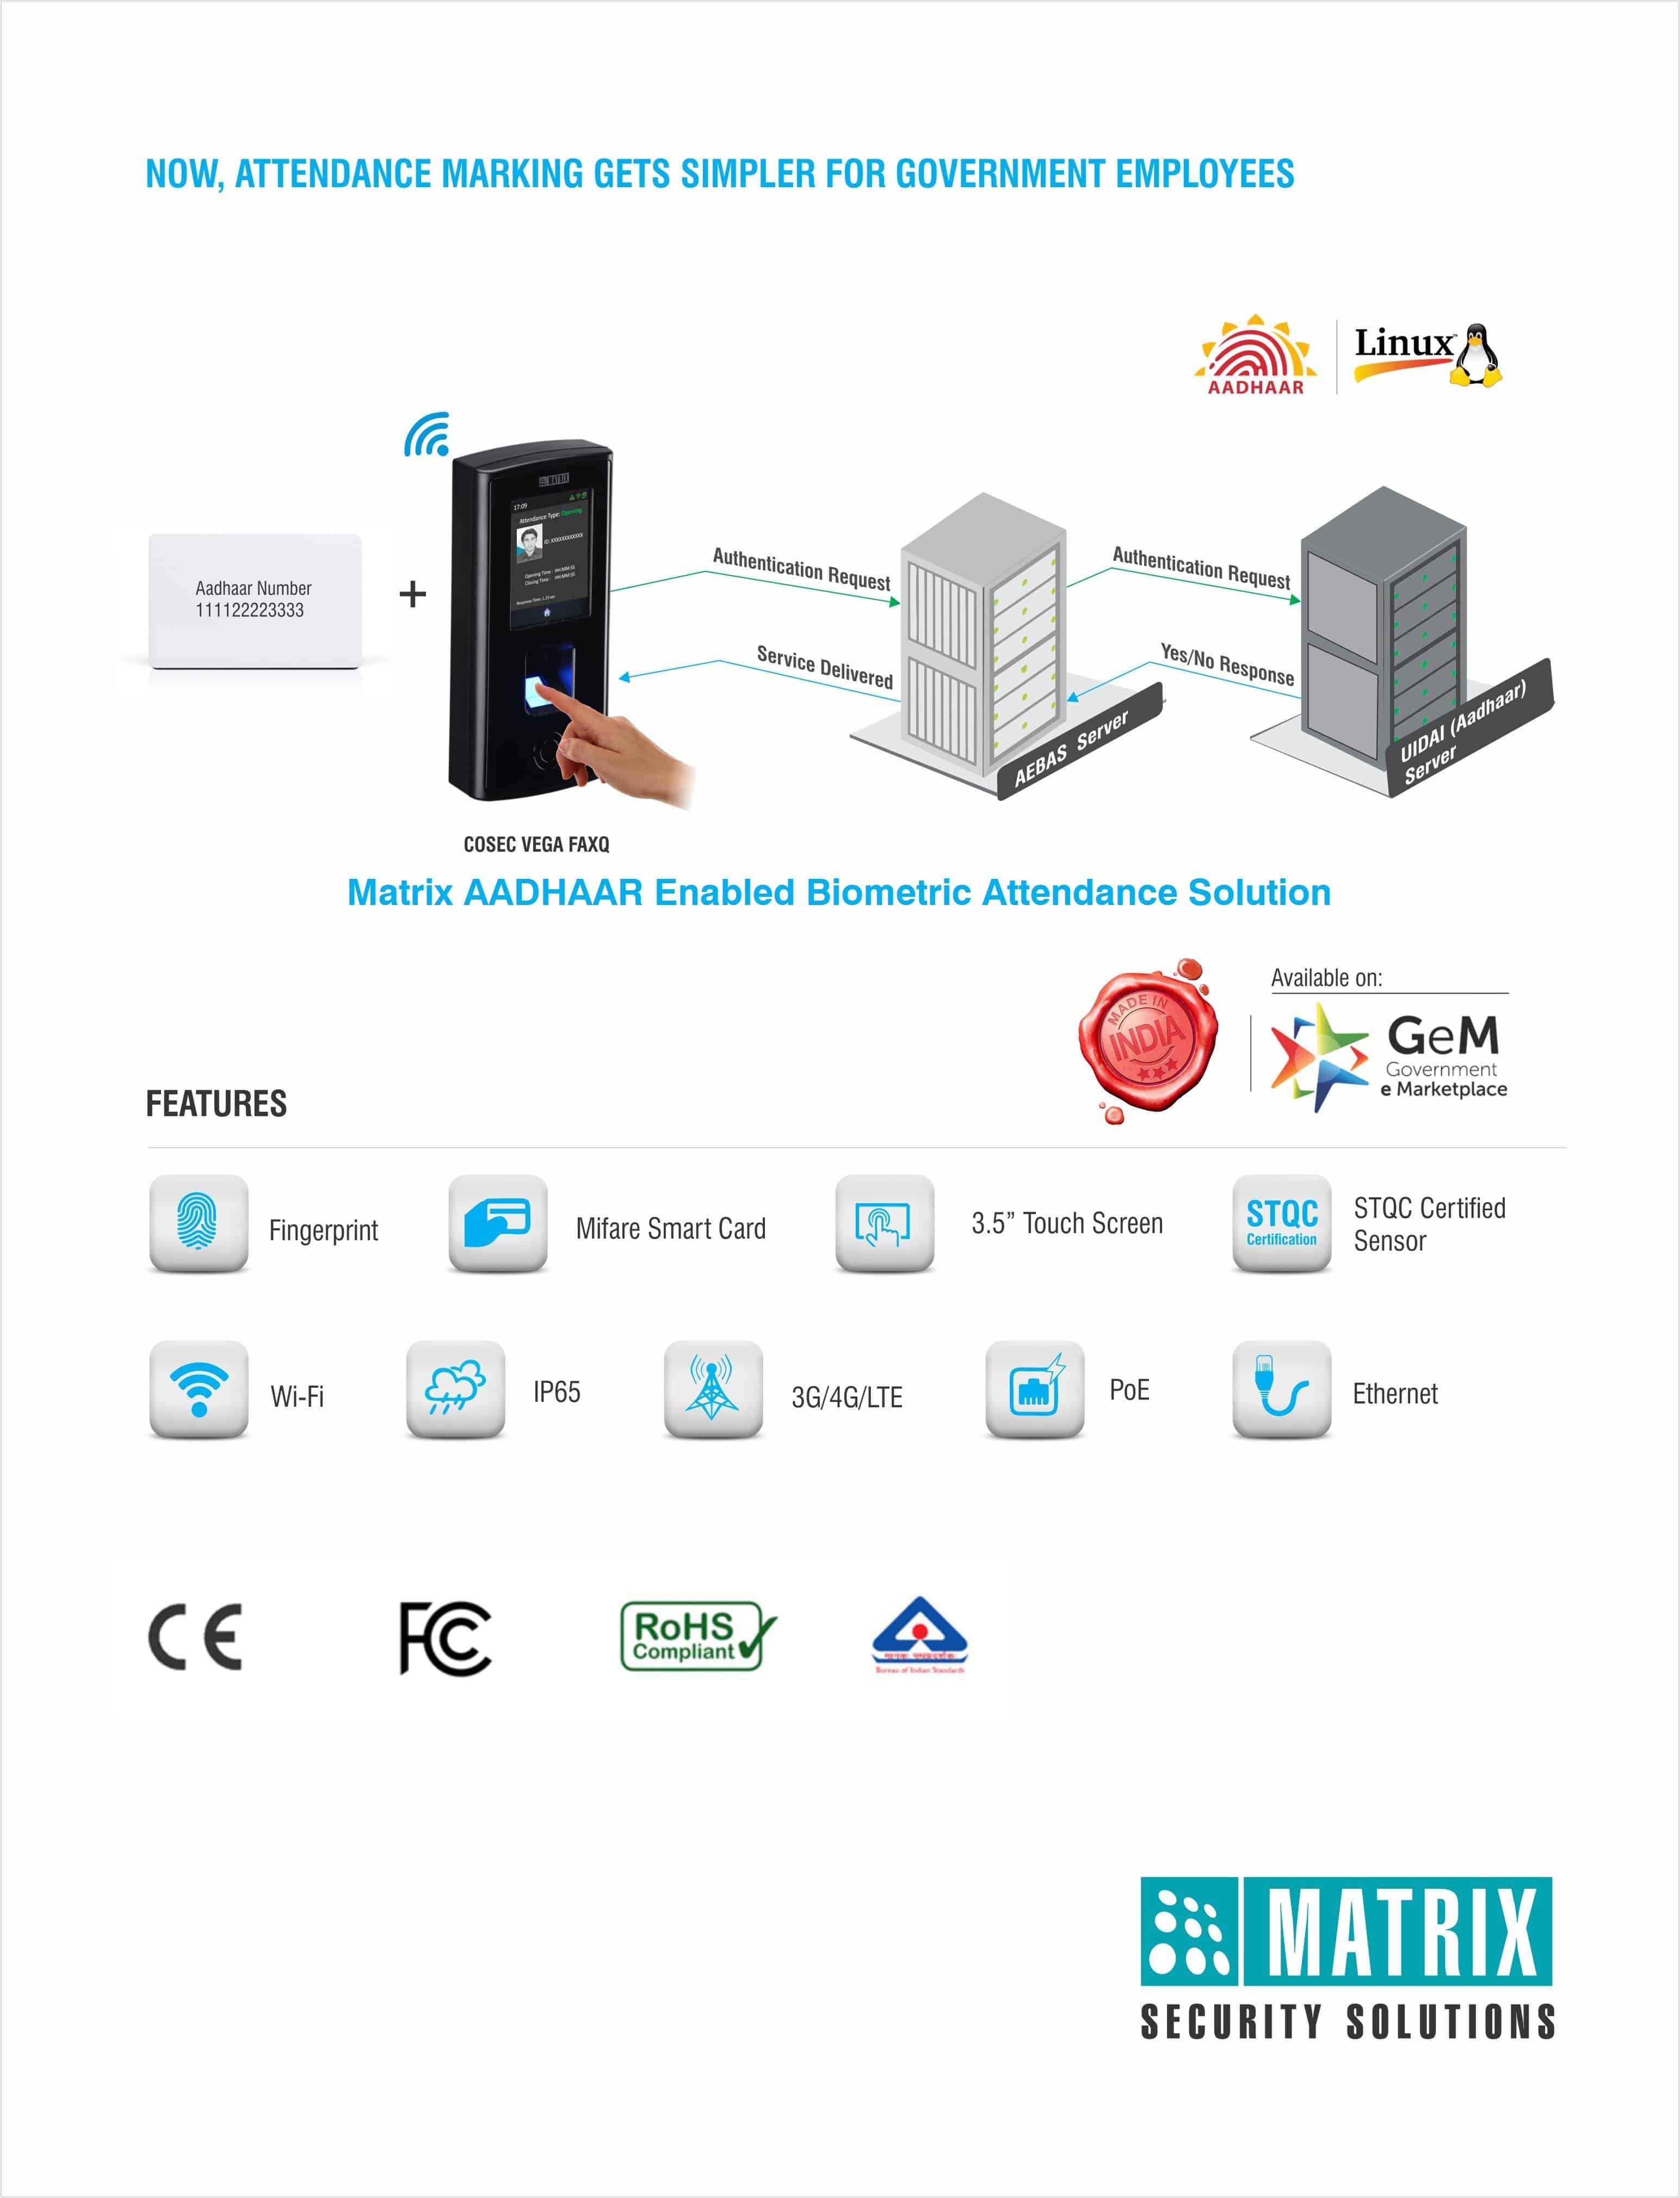 Features of AADHAAR Enabled Biometric Solution